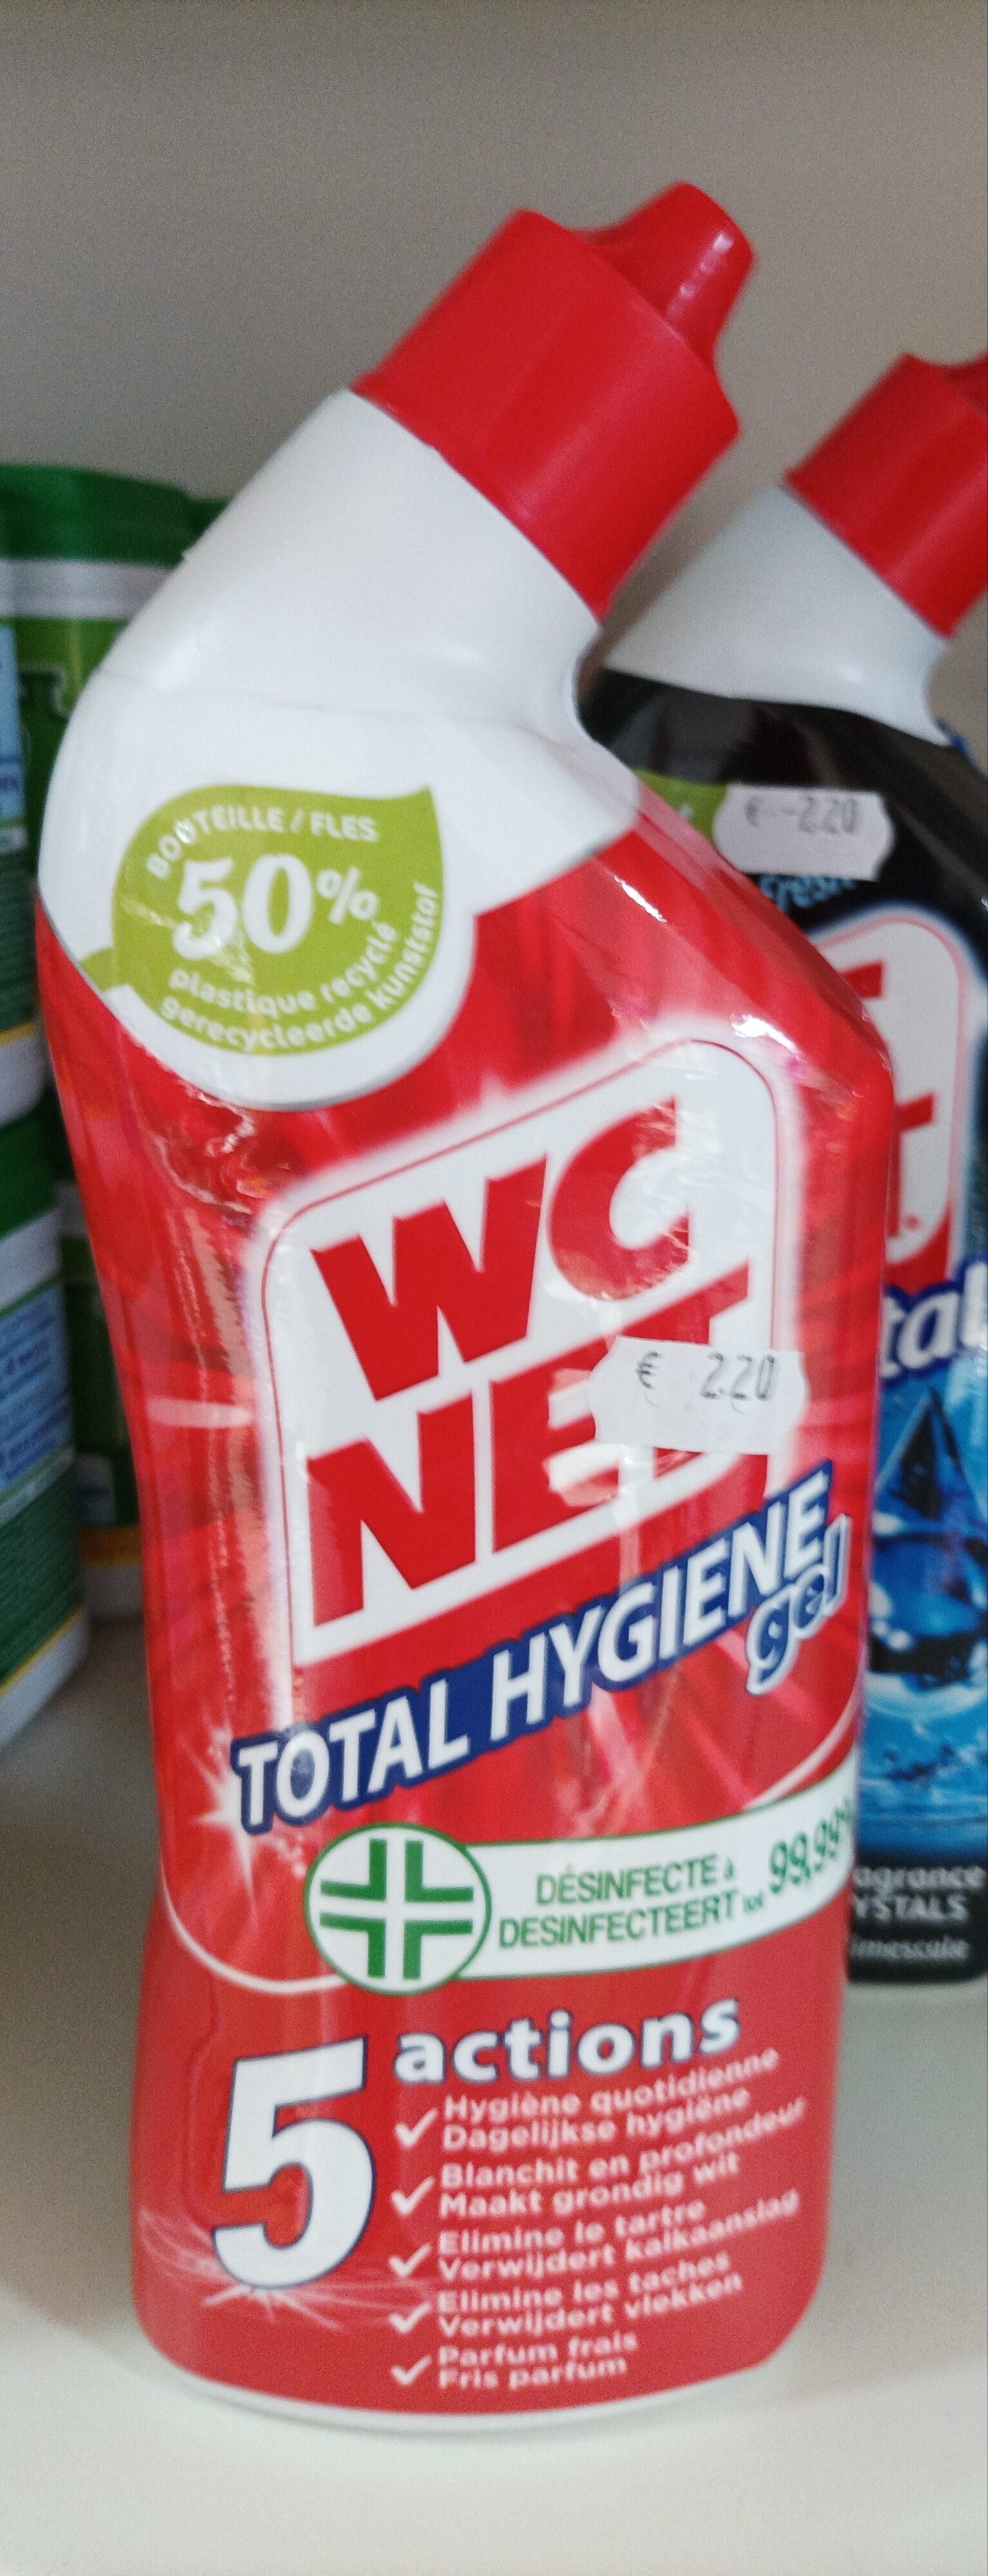 Total hygiène gel - Product - fr